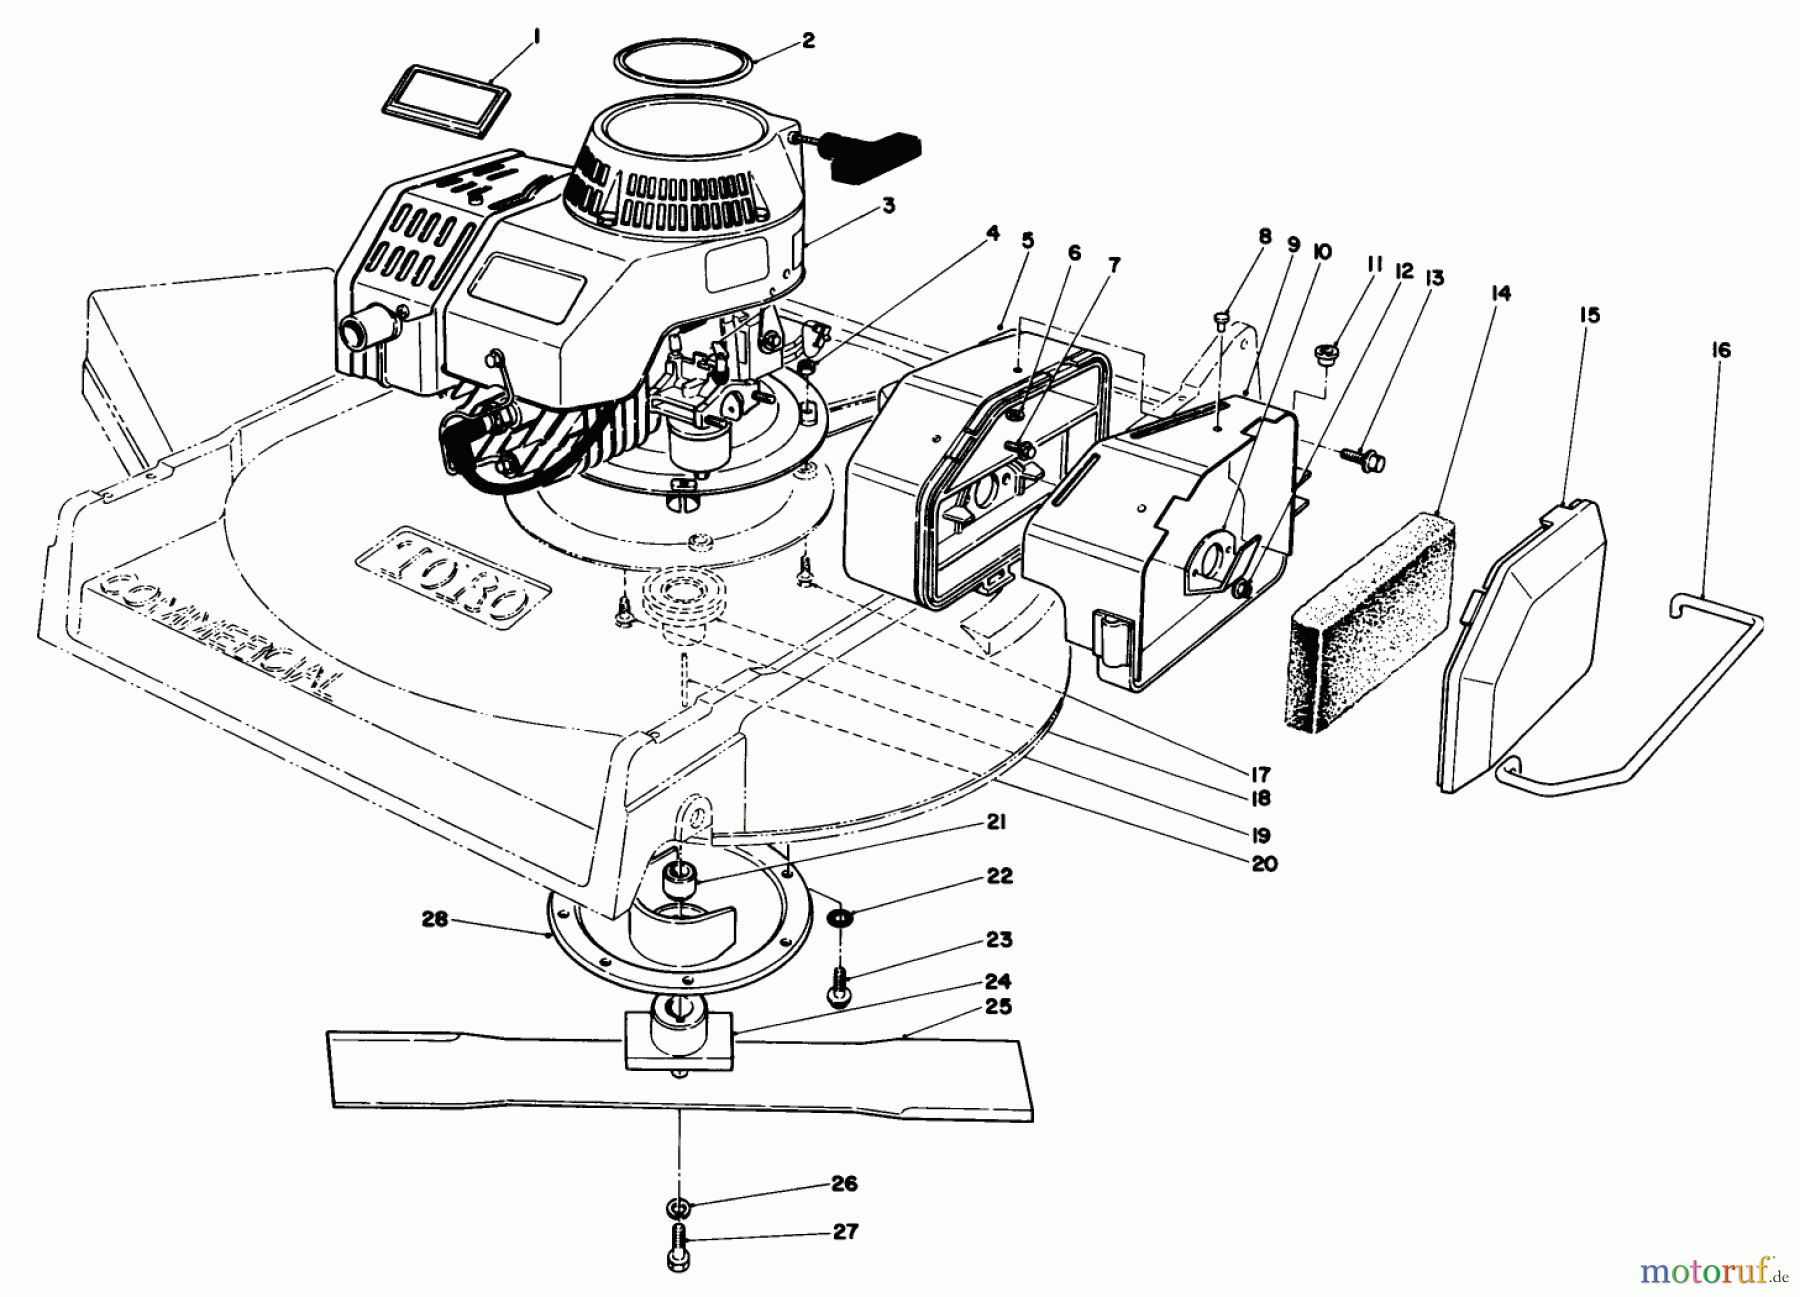  Toro Neu Mowers, Walk-Behind Seite 2 22680C - Toro Lawnmower, 1988 (8000001-8999999) ENGINE ASSEMBLY